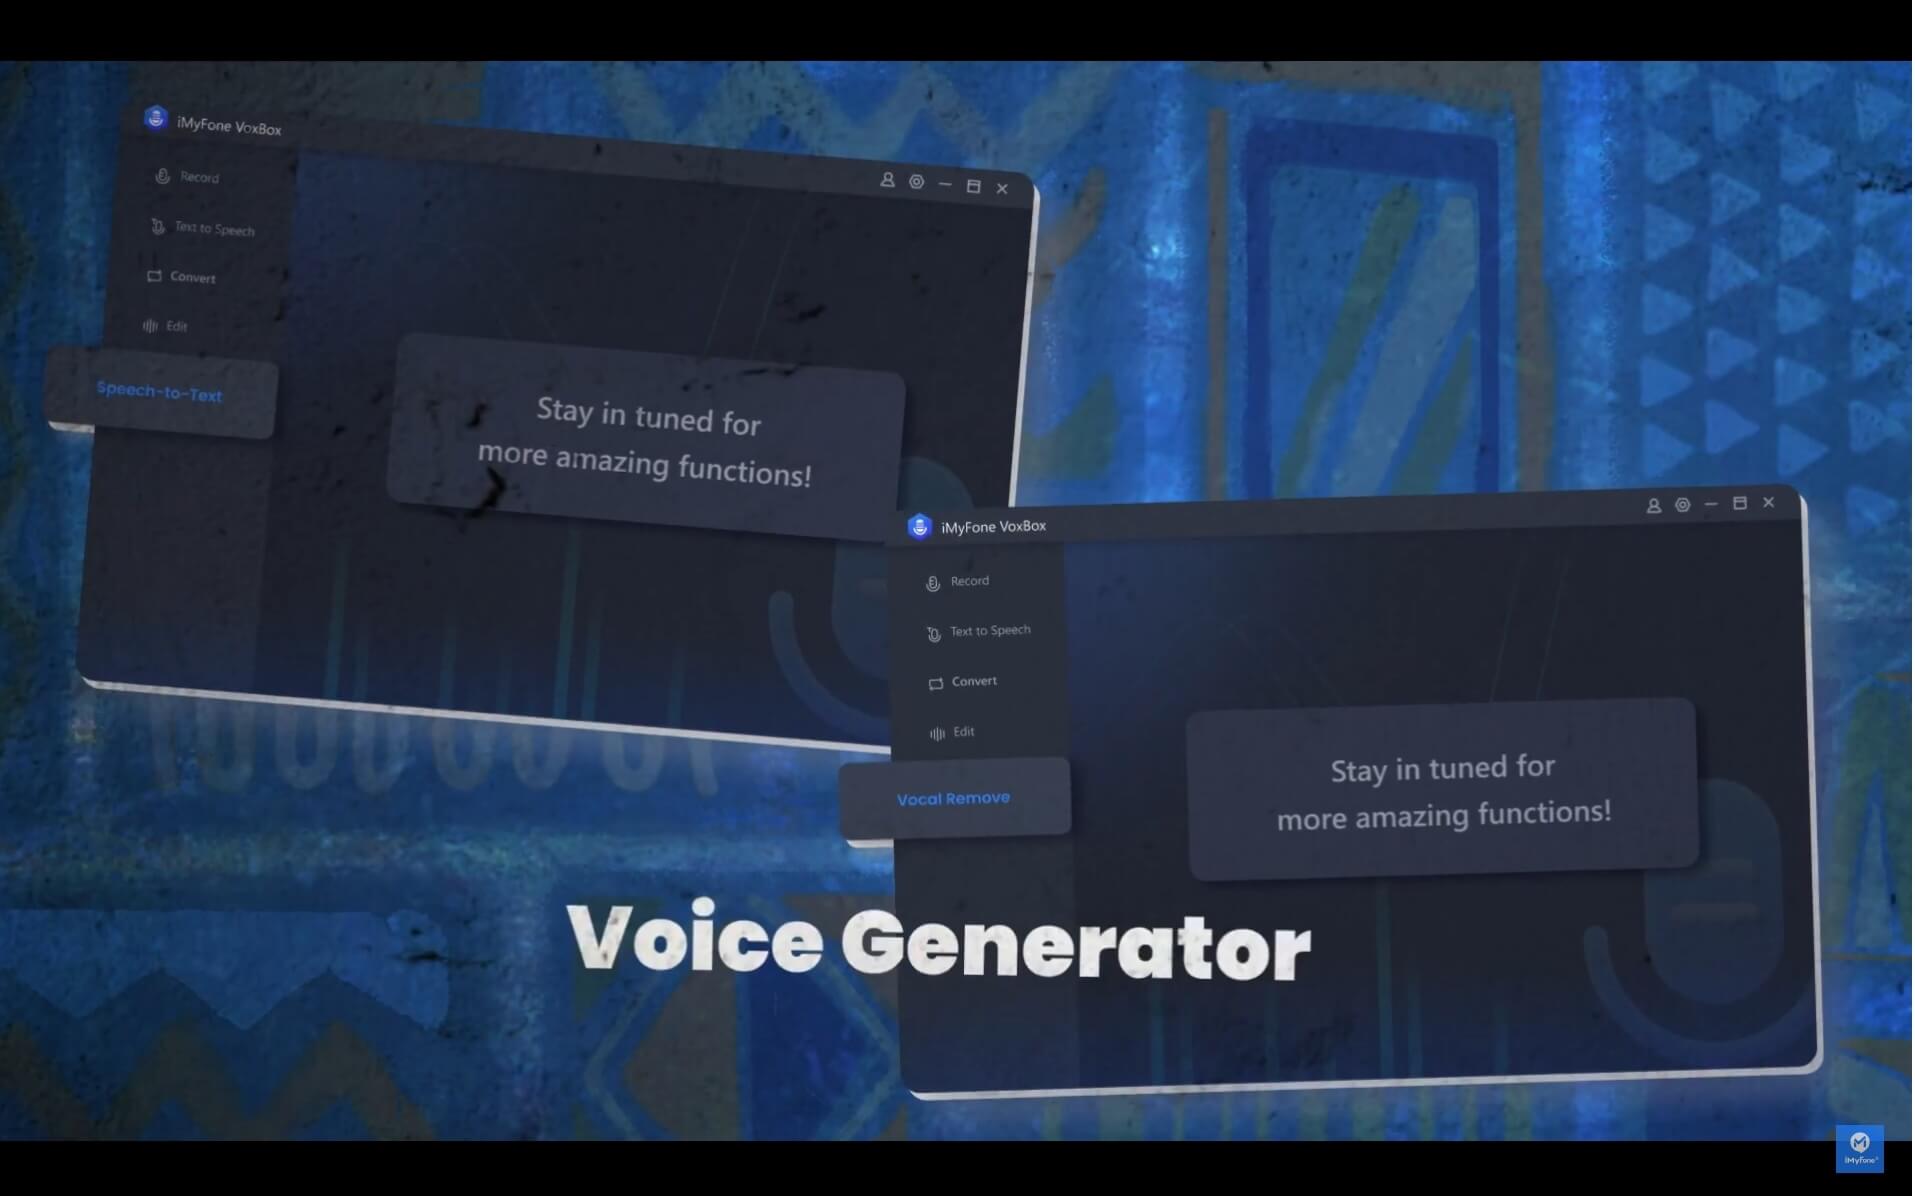 imyfone voxbox voice generator